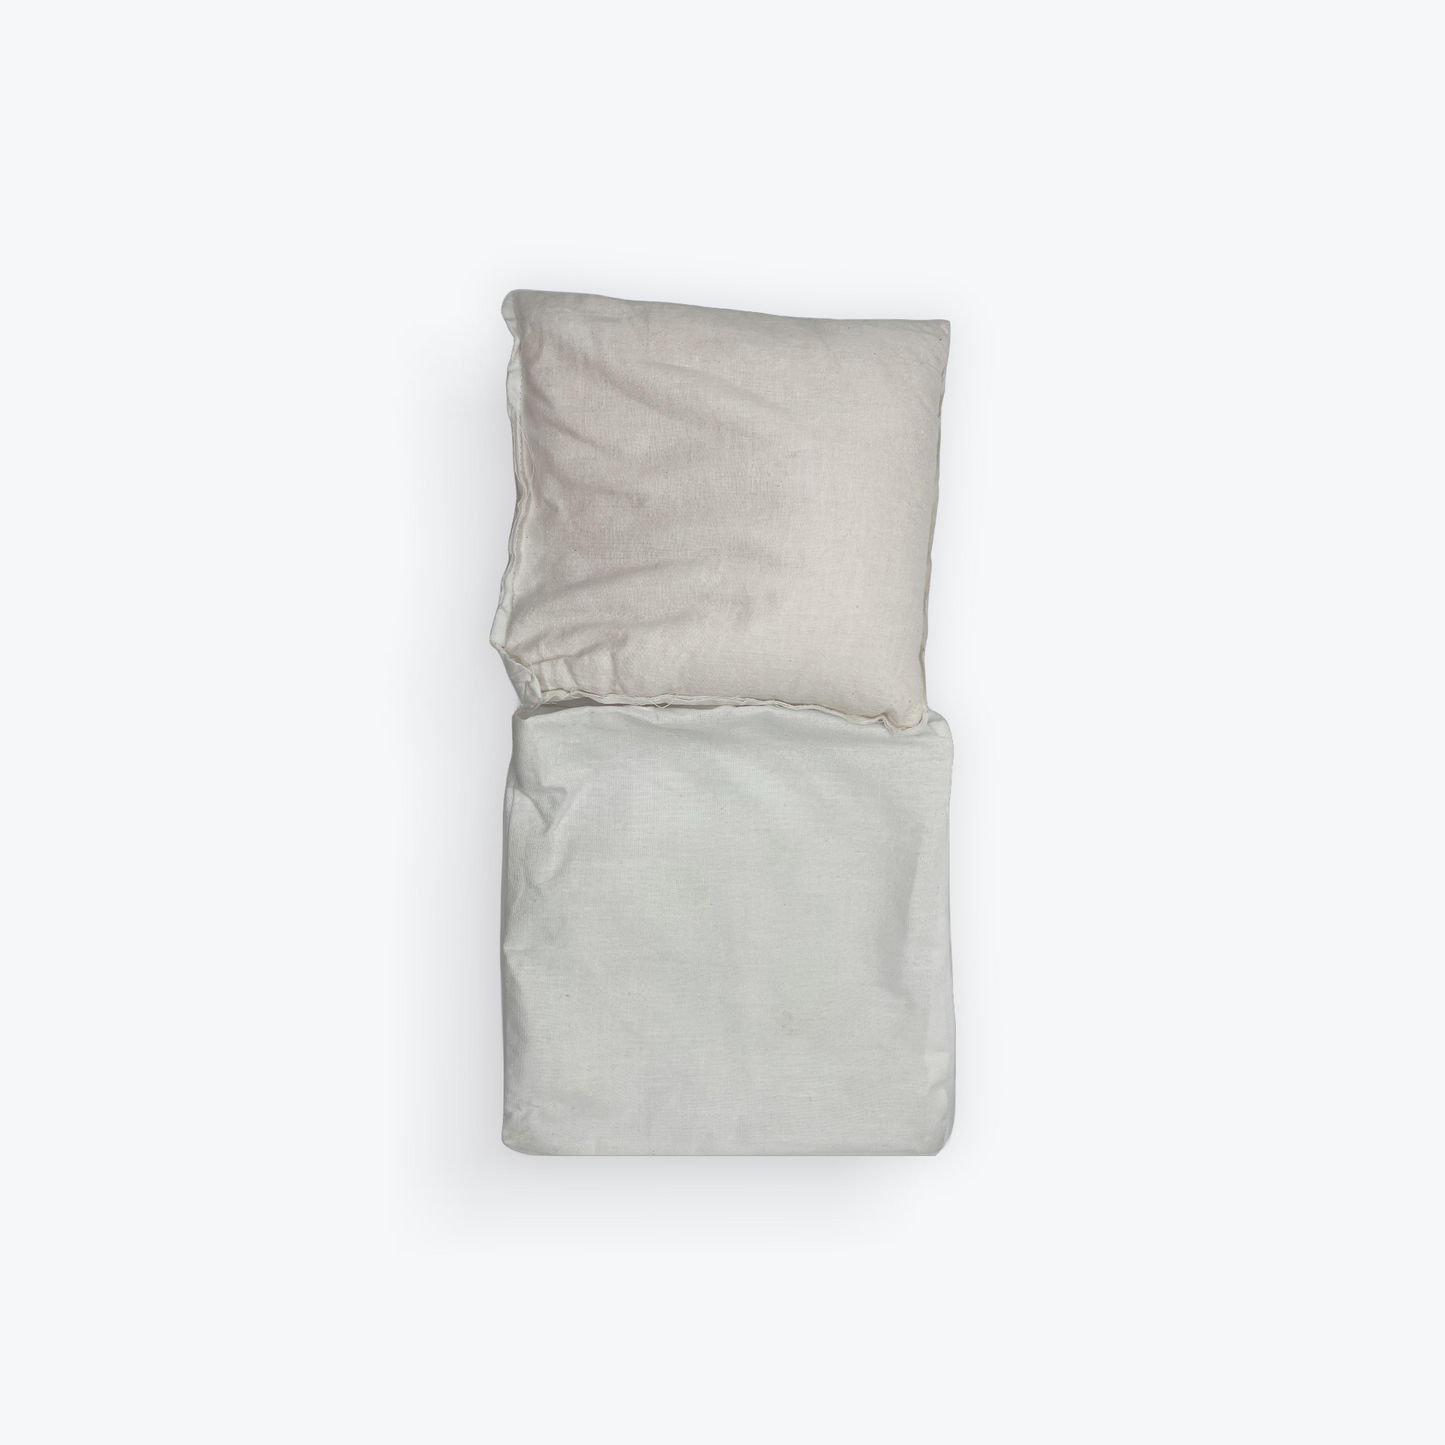 Himalayan Salt Therapy Pillow